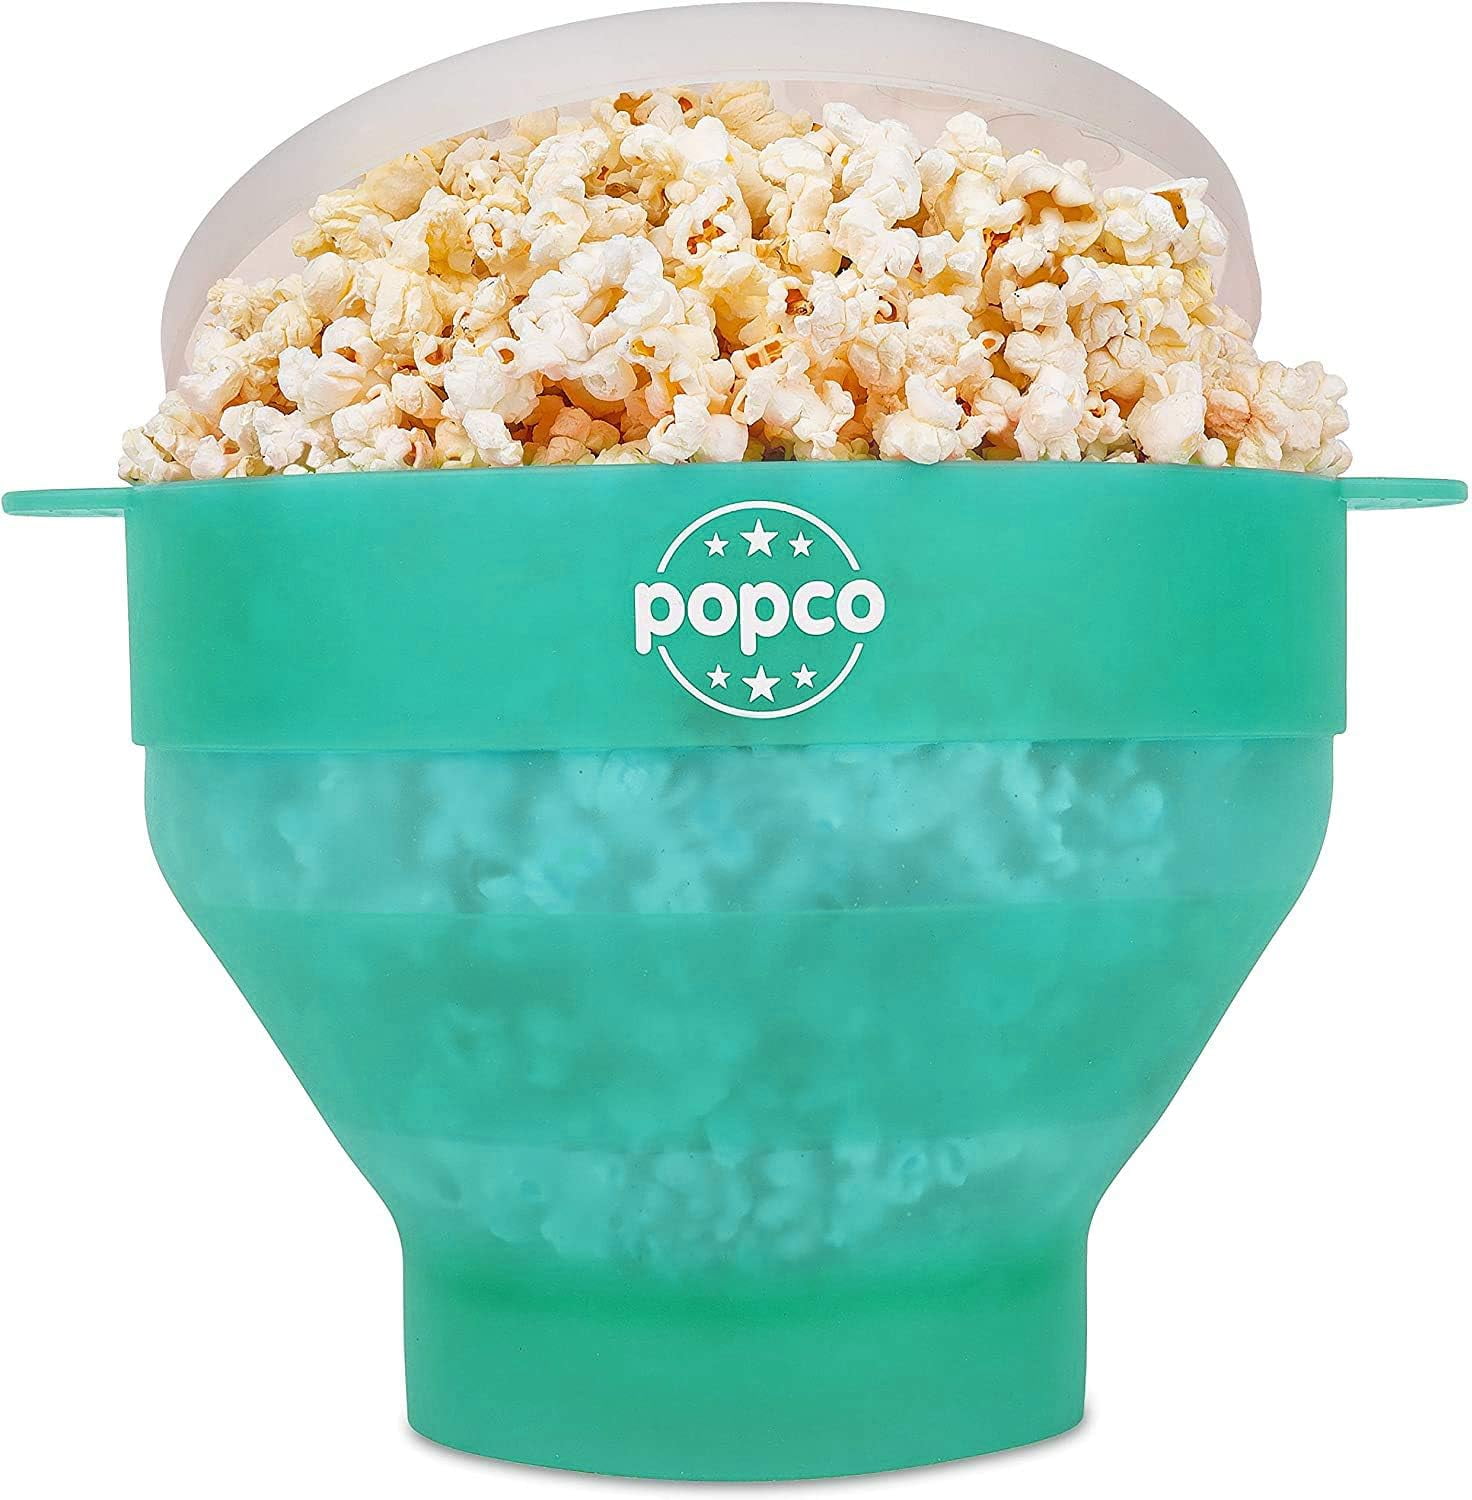 Color Changing Popcorn Maker @